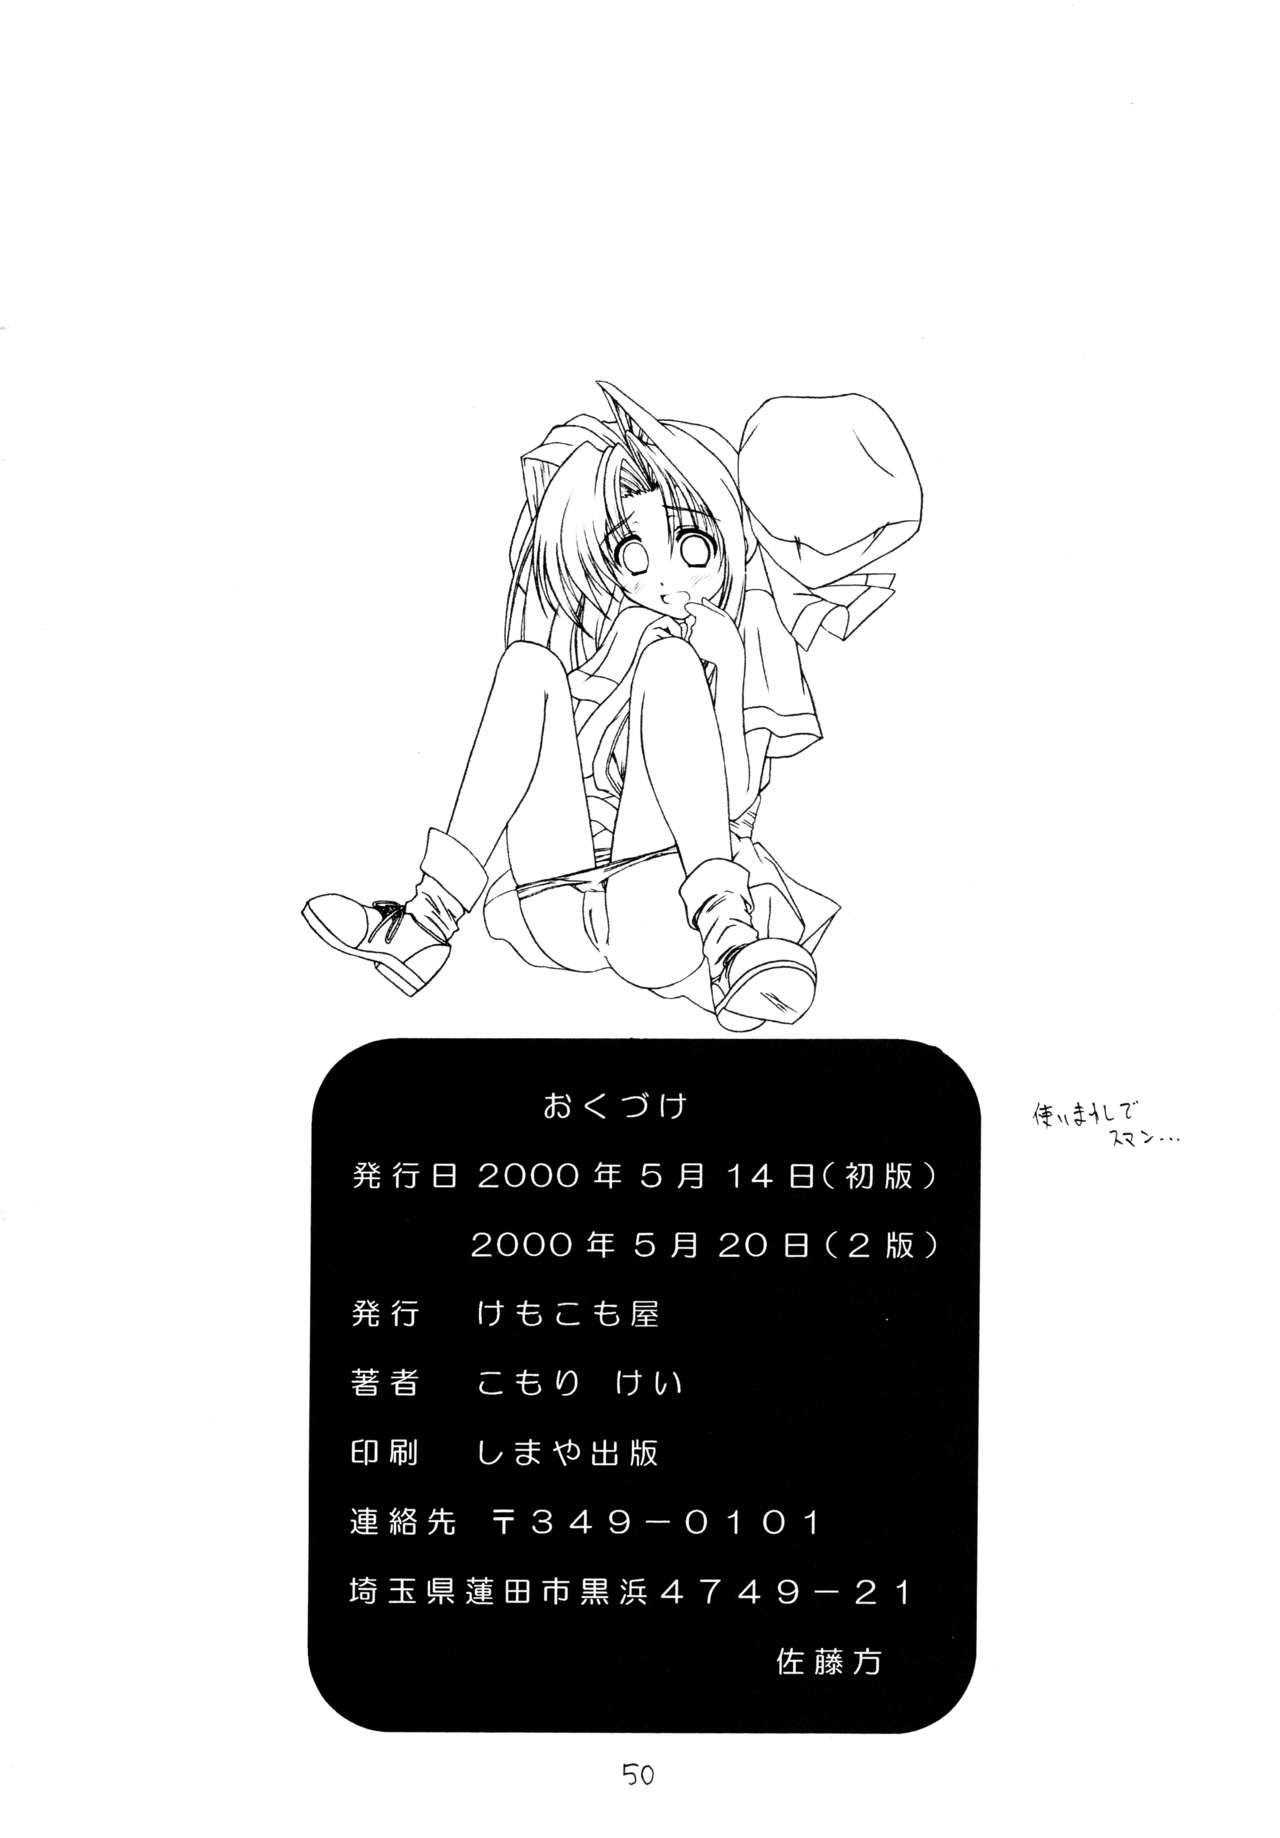 (CR27) [Kemokomoya (Komori Kei, Ibuki Pon)] Mutenka Shoujo 2 (Shining Sword Romance) (Cレヴォ27) [けもこも屋 (こもりけい、息吹ポン)] 無添加少女2 (ロマンスは剣の輝き)